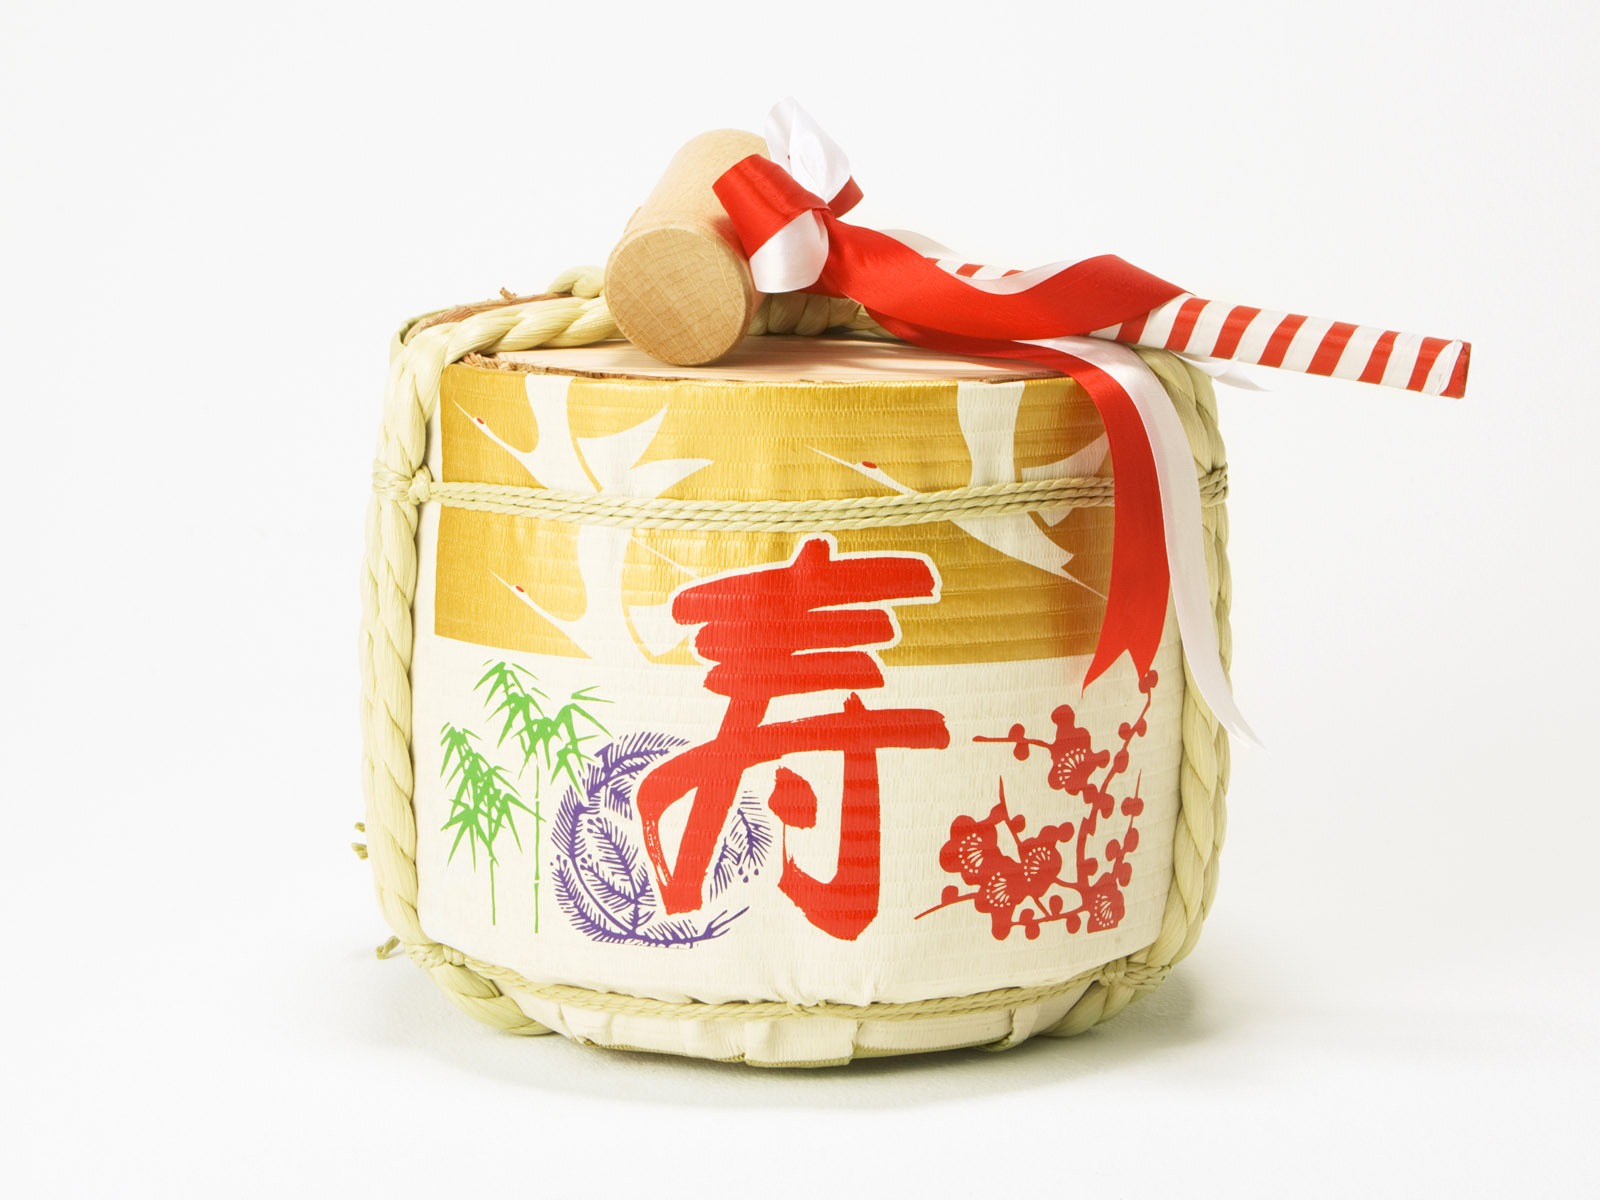 Fondos de año nuevo japonés Cultura (2) #12 - 1600x1200